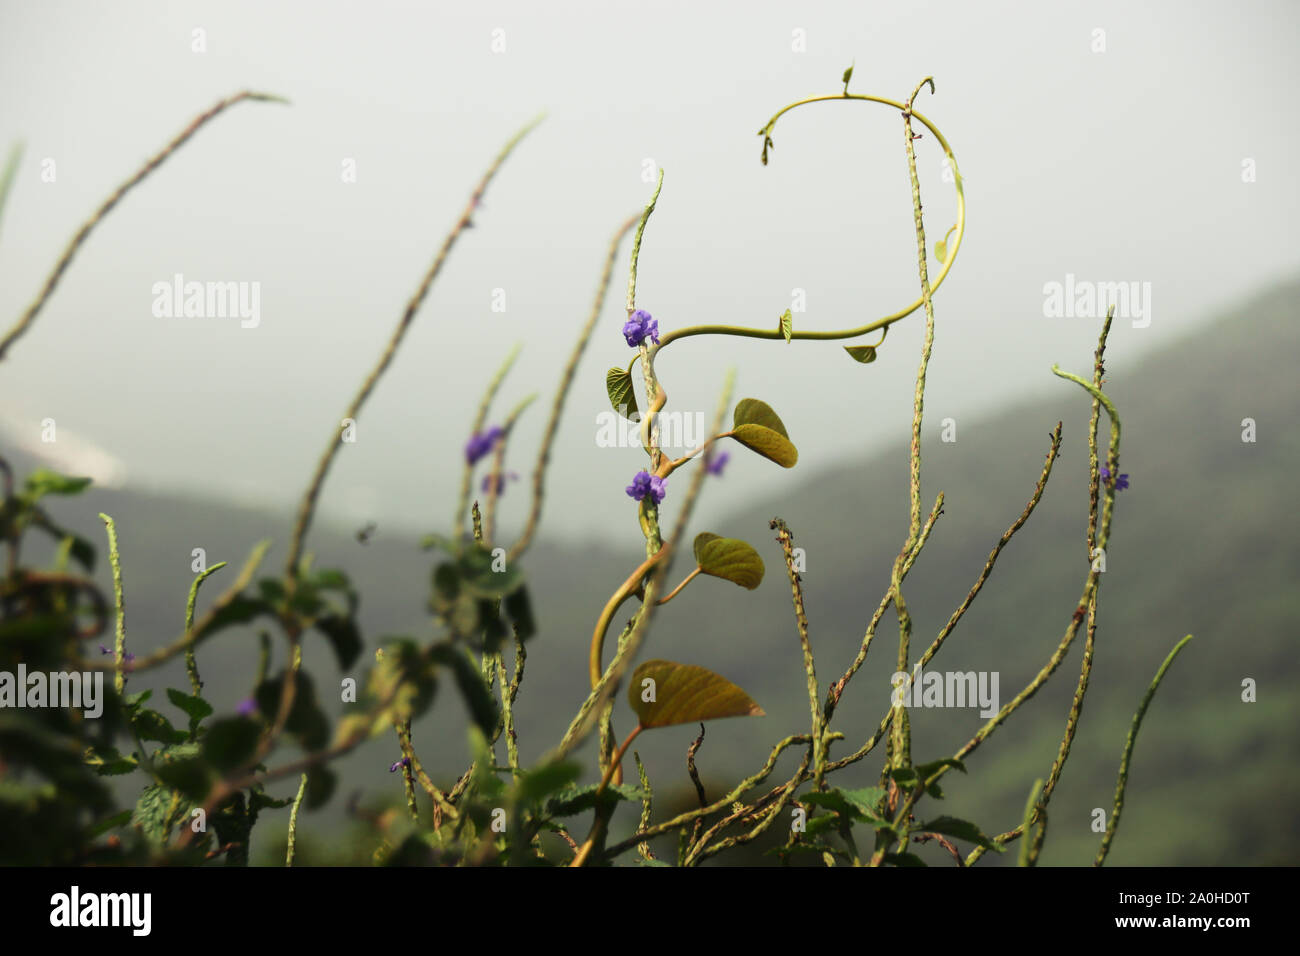 Reben mit Lavendelblüten, die vor einem nebligen Berghintergrund in den Himmel ragen, der das kommen der Frühlingssaison signalisiert Stockfoto